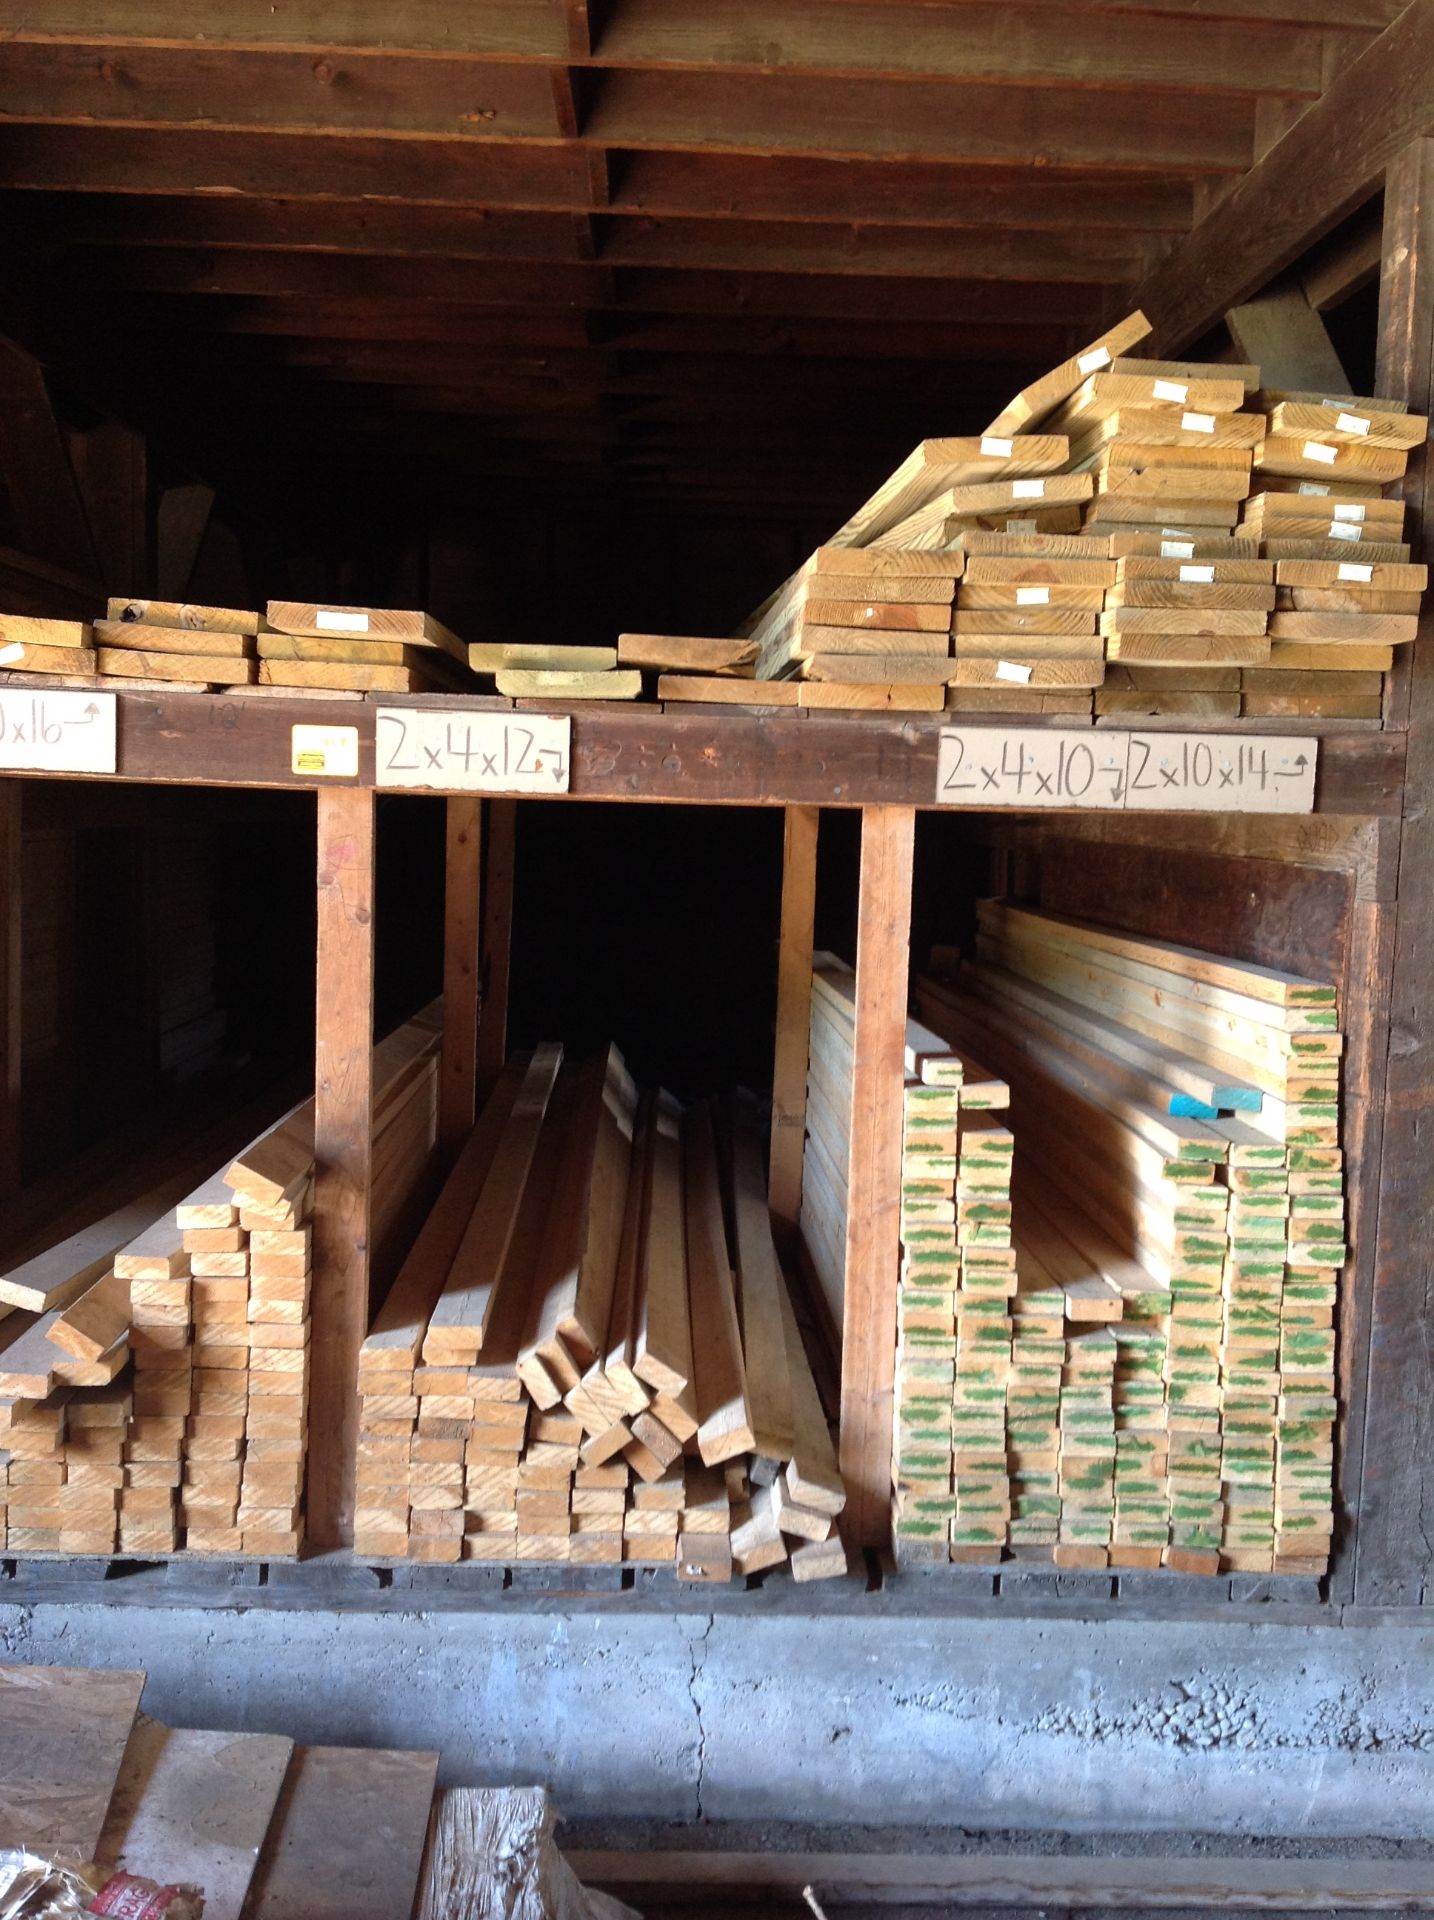 Lumber 2x4